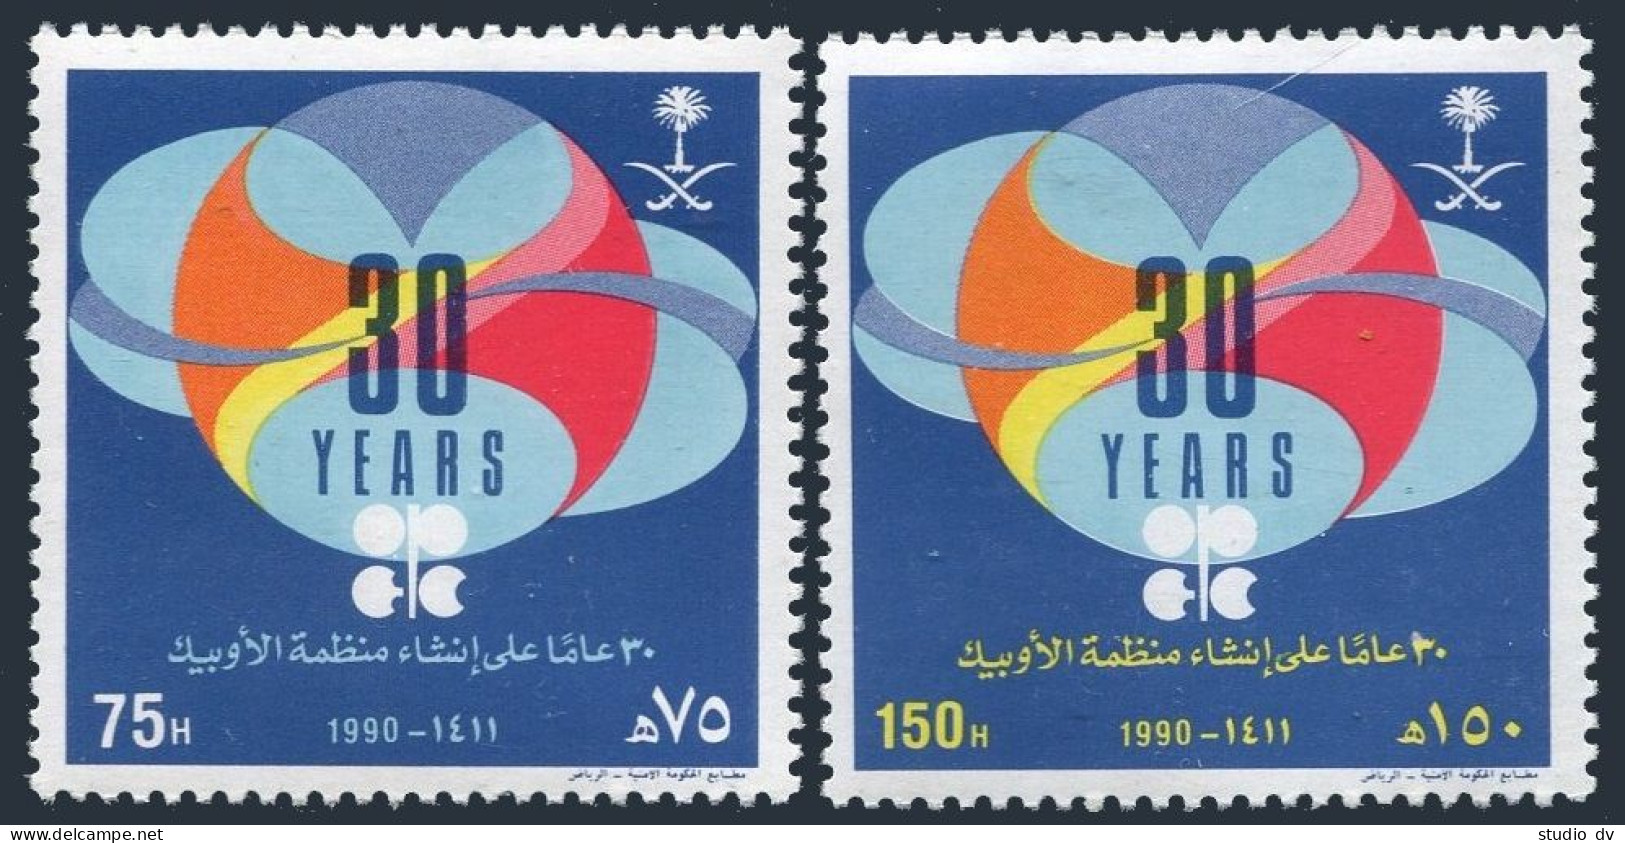 Saudi Arabia 1136-1137, MNH. Michel 1054-1055. OPEC, 30th Ann. 1990.  - Arabia Saudita